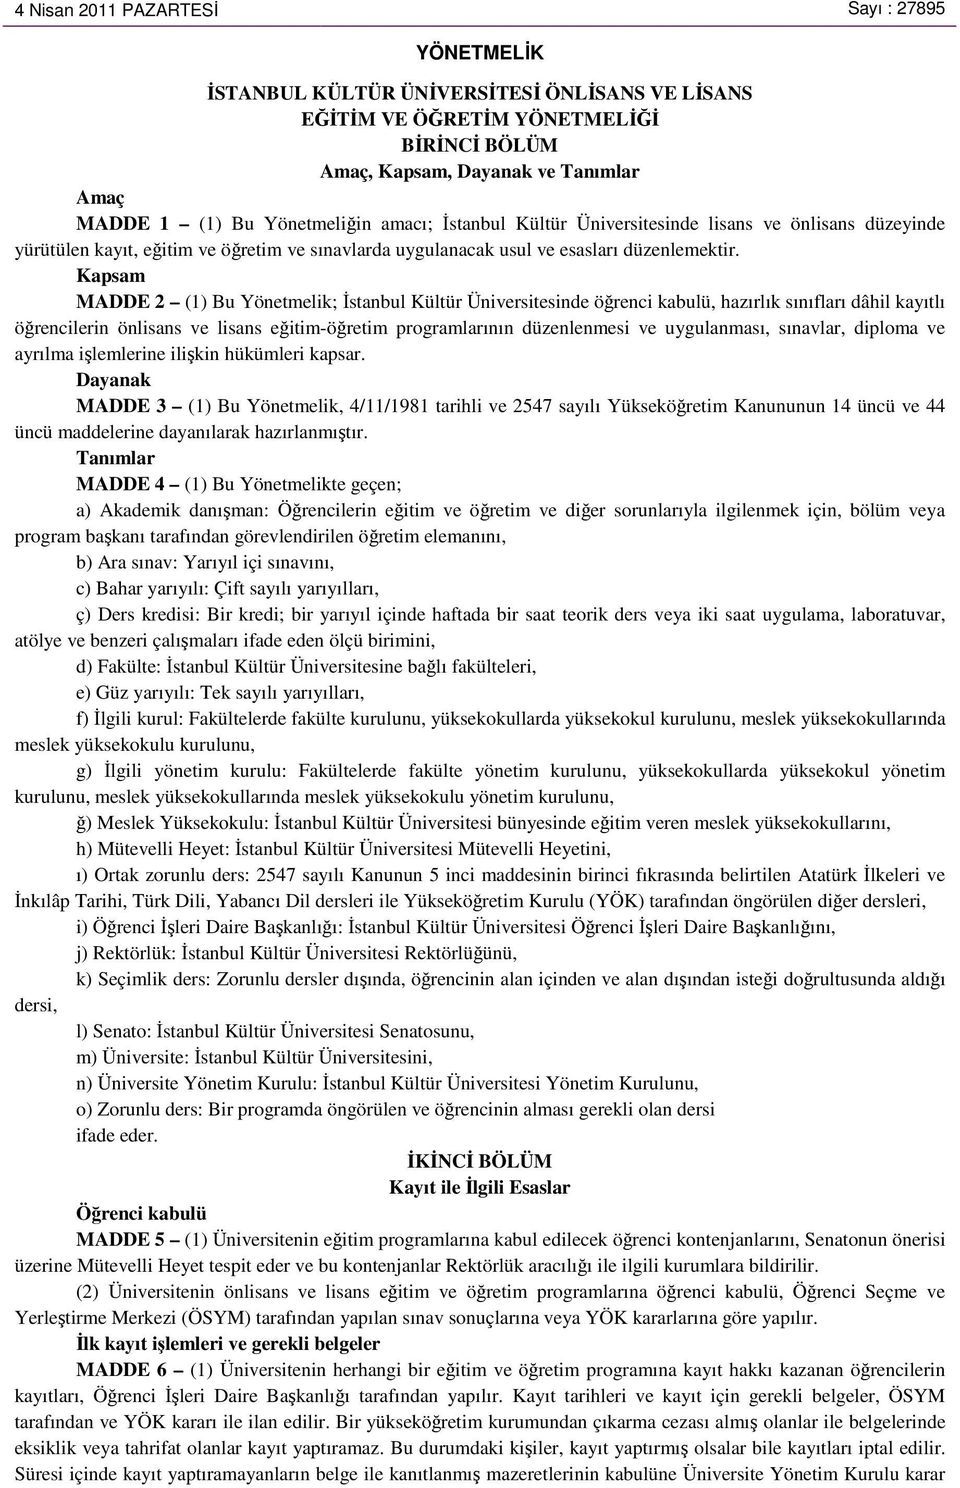 Kapsam MADDE 2 (1) Bu Yönetmelik; İstanbul Kültür Üniversitesinde öğrenci kabulü, hazırlık sınıfları dâhil kayıtlı öğrencilerin önlisans ve lisans eğitim-öğretim programlarının düzenlenmesi ve